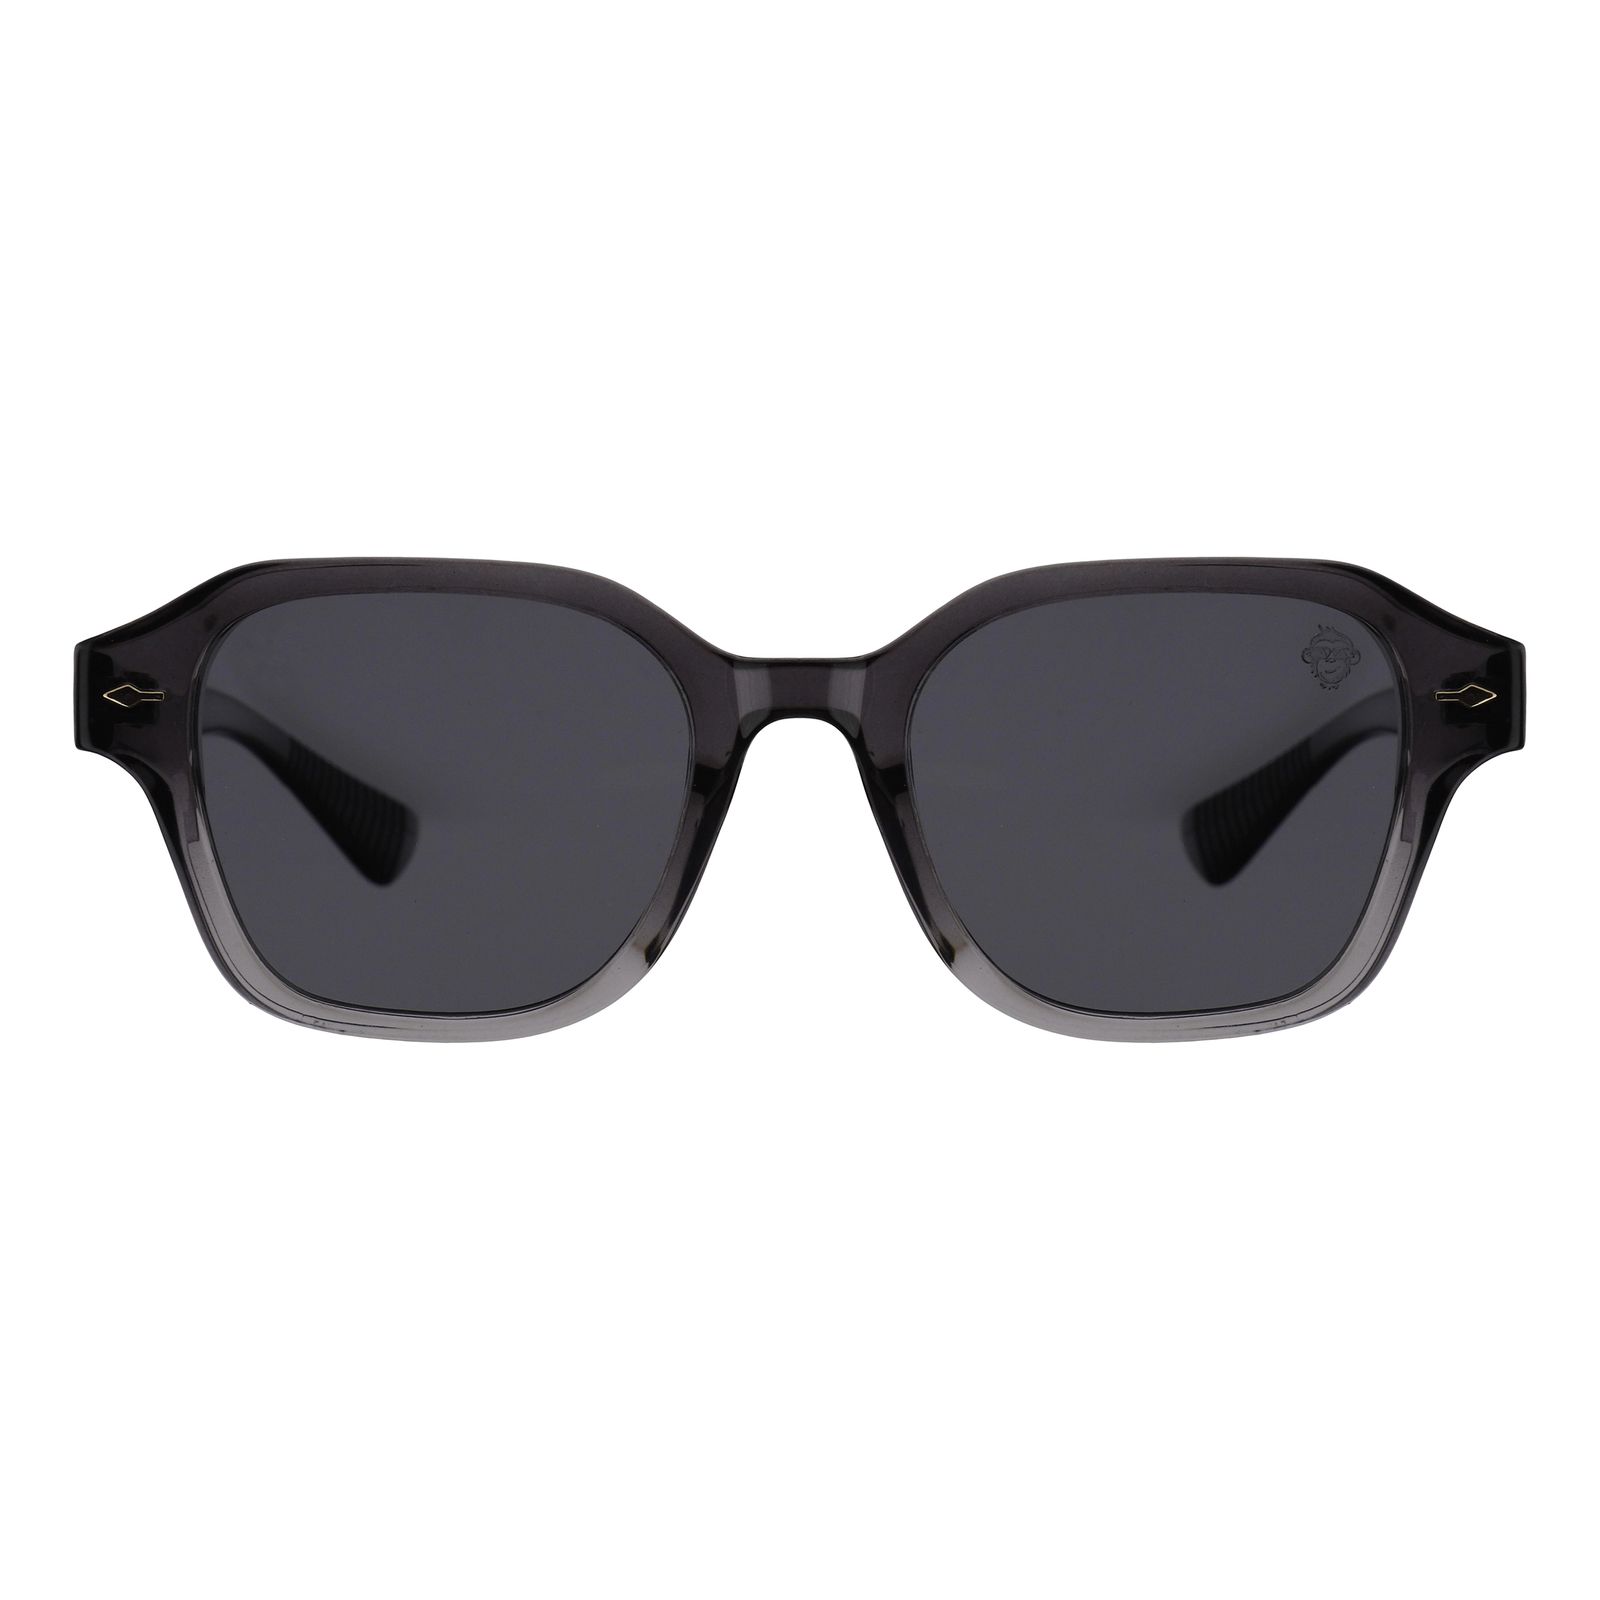 عینک آفتابی مستر مانکی مدل 6042 gr -  - 1